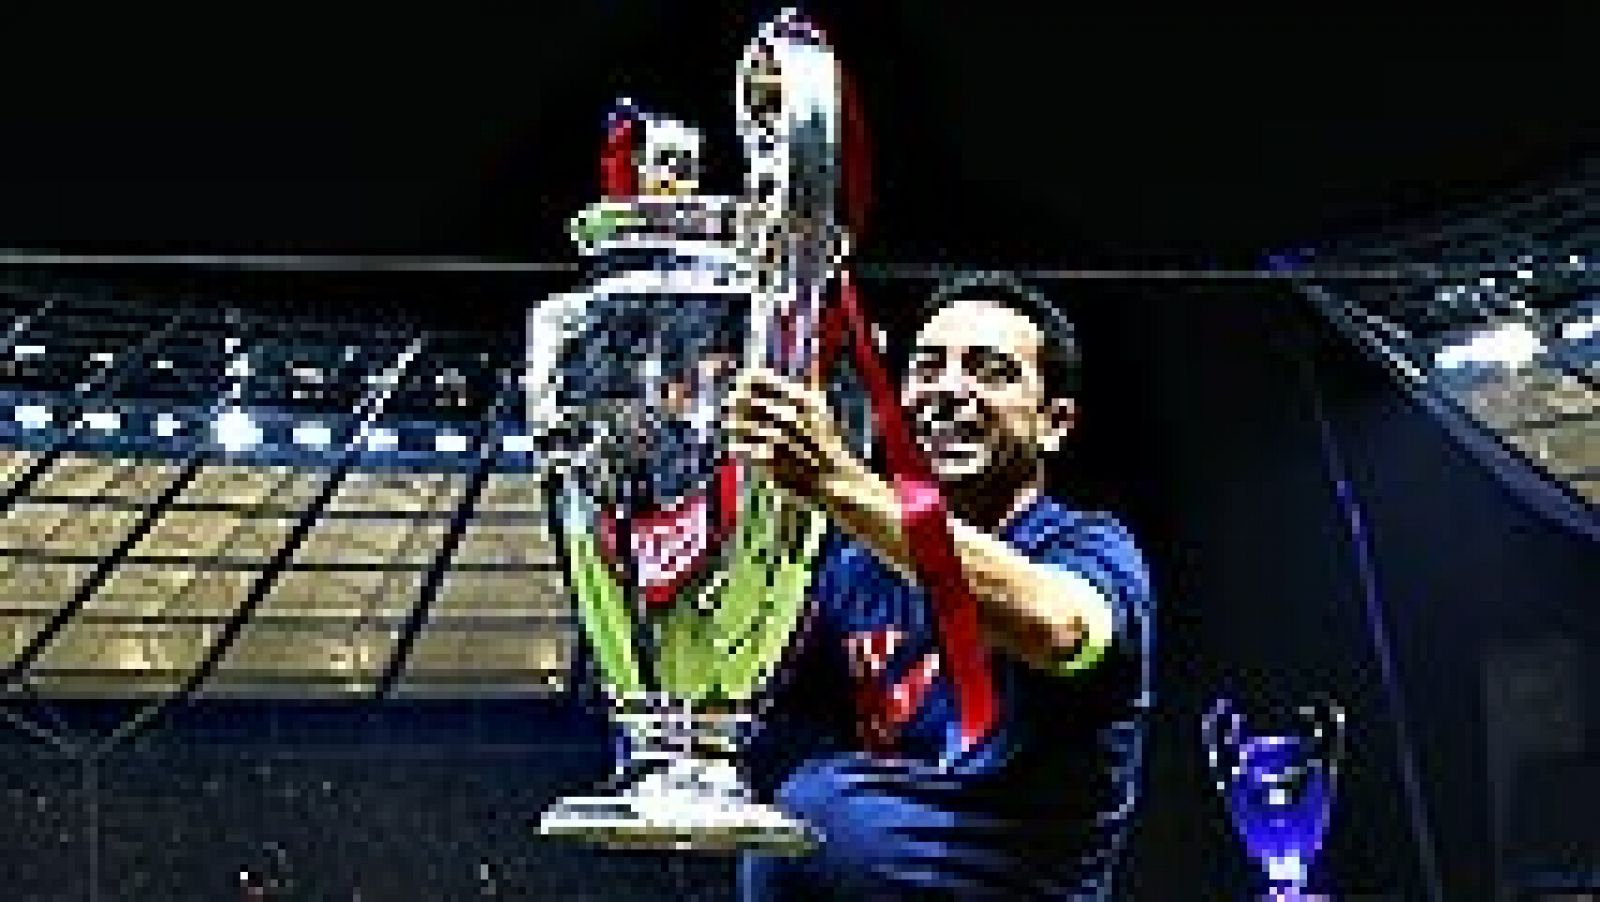 El jugador y capitán del FC Barcelona Xavi Hernández deja 'su'  Barça, al jugar y ganar este sábado en la final de la Liga de  Campeones su último partido como blaugrana, con un récord de 25  títulos y otro récord de 767 enfrentamientos oficiales, y 